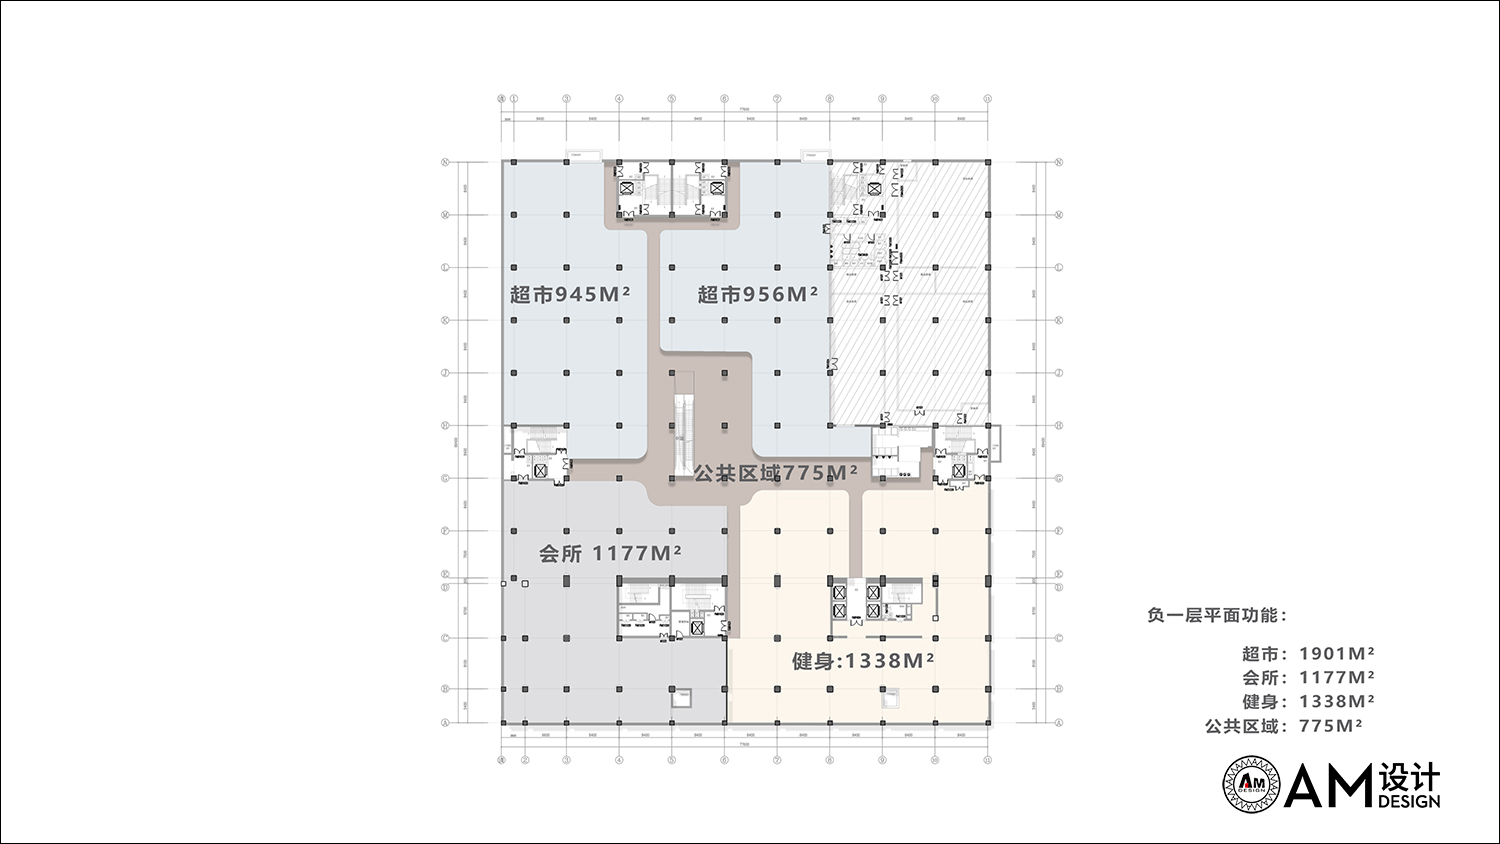 AM DESIGN | Ground floor plan of Jinhui port commercial complex, jhg, Beijing